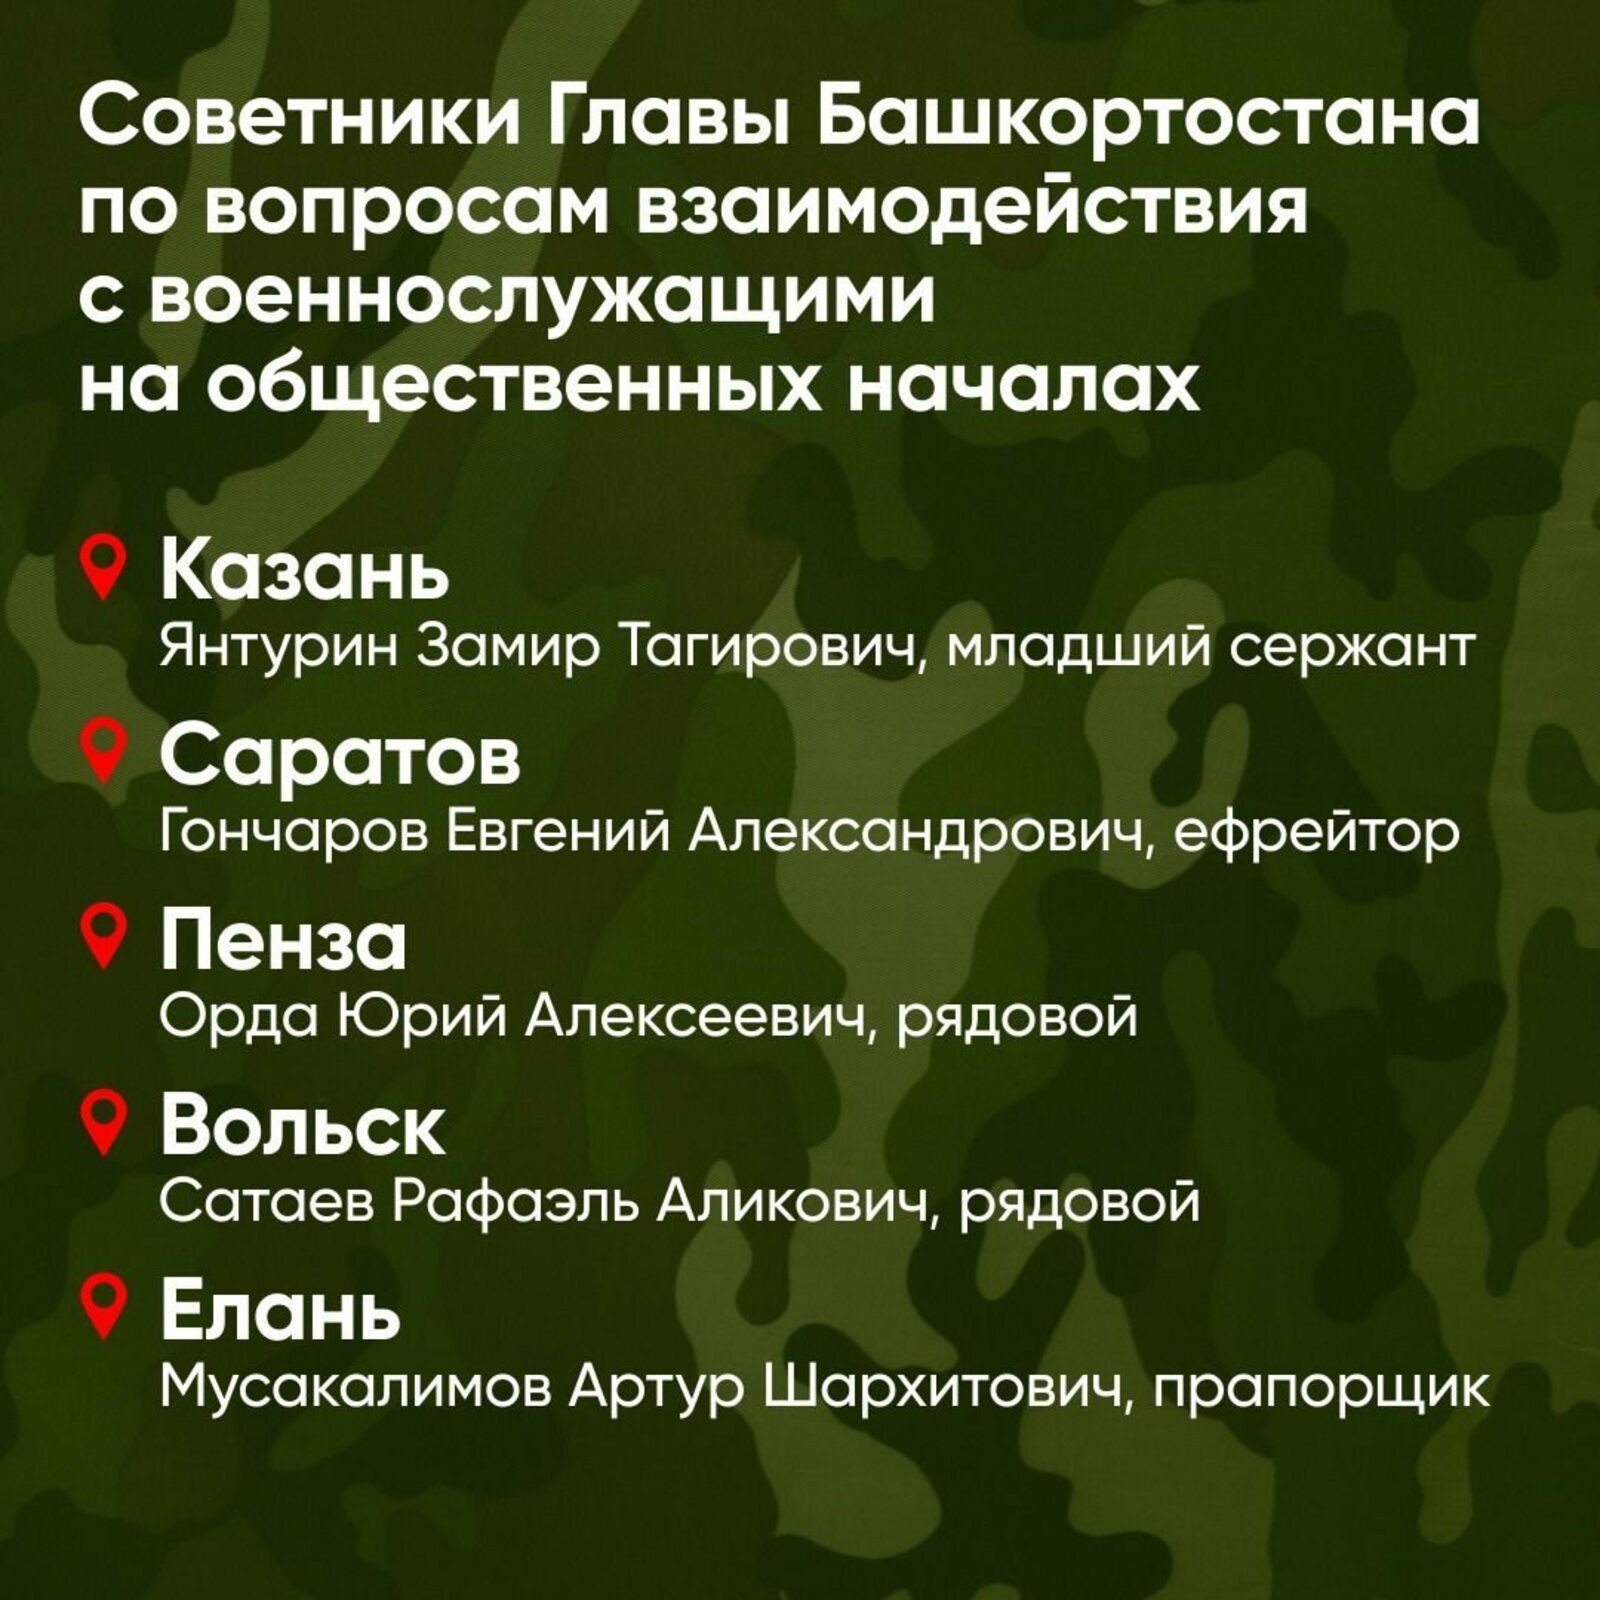 Глава Башкирии представил советников по взаимодействию с мобилизованными военнослужащими